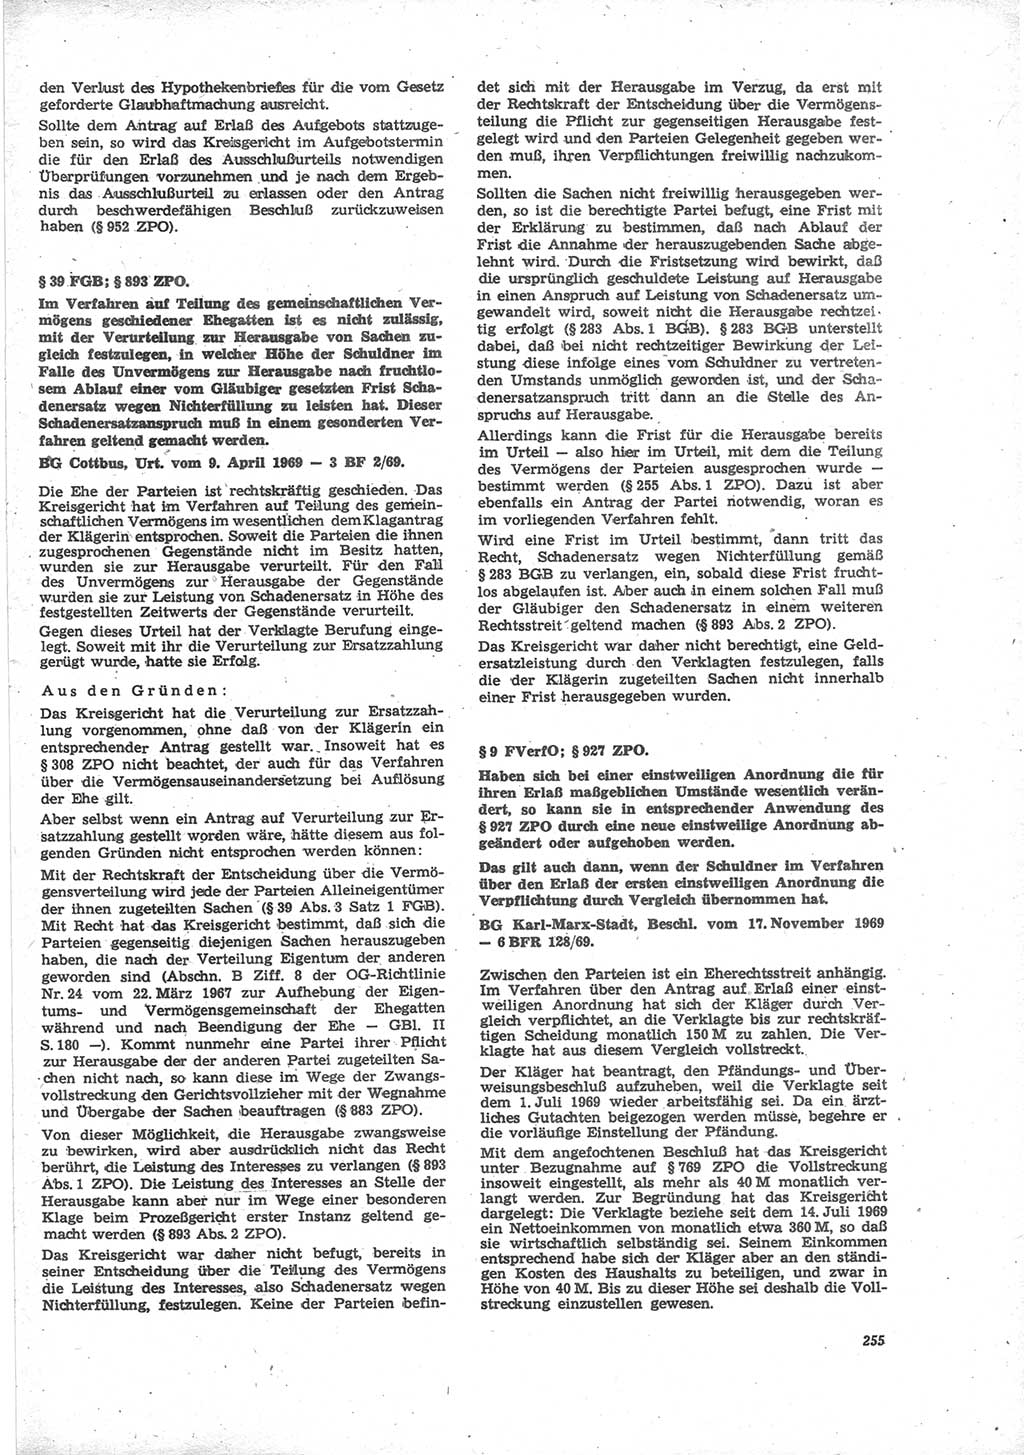 Neue Justiz (NJ), Zeitschrift für Recht und Rechtswissenschaft [Deutsche Demokratische Republik (DDR)], 24. Jahrgang 1970, Seite 255 (NJ DDR 1970, S. 255)